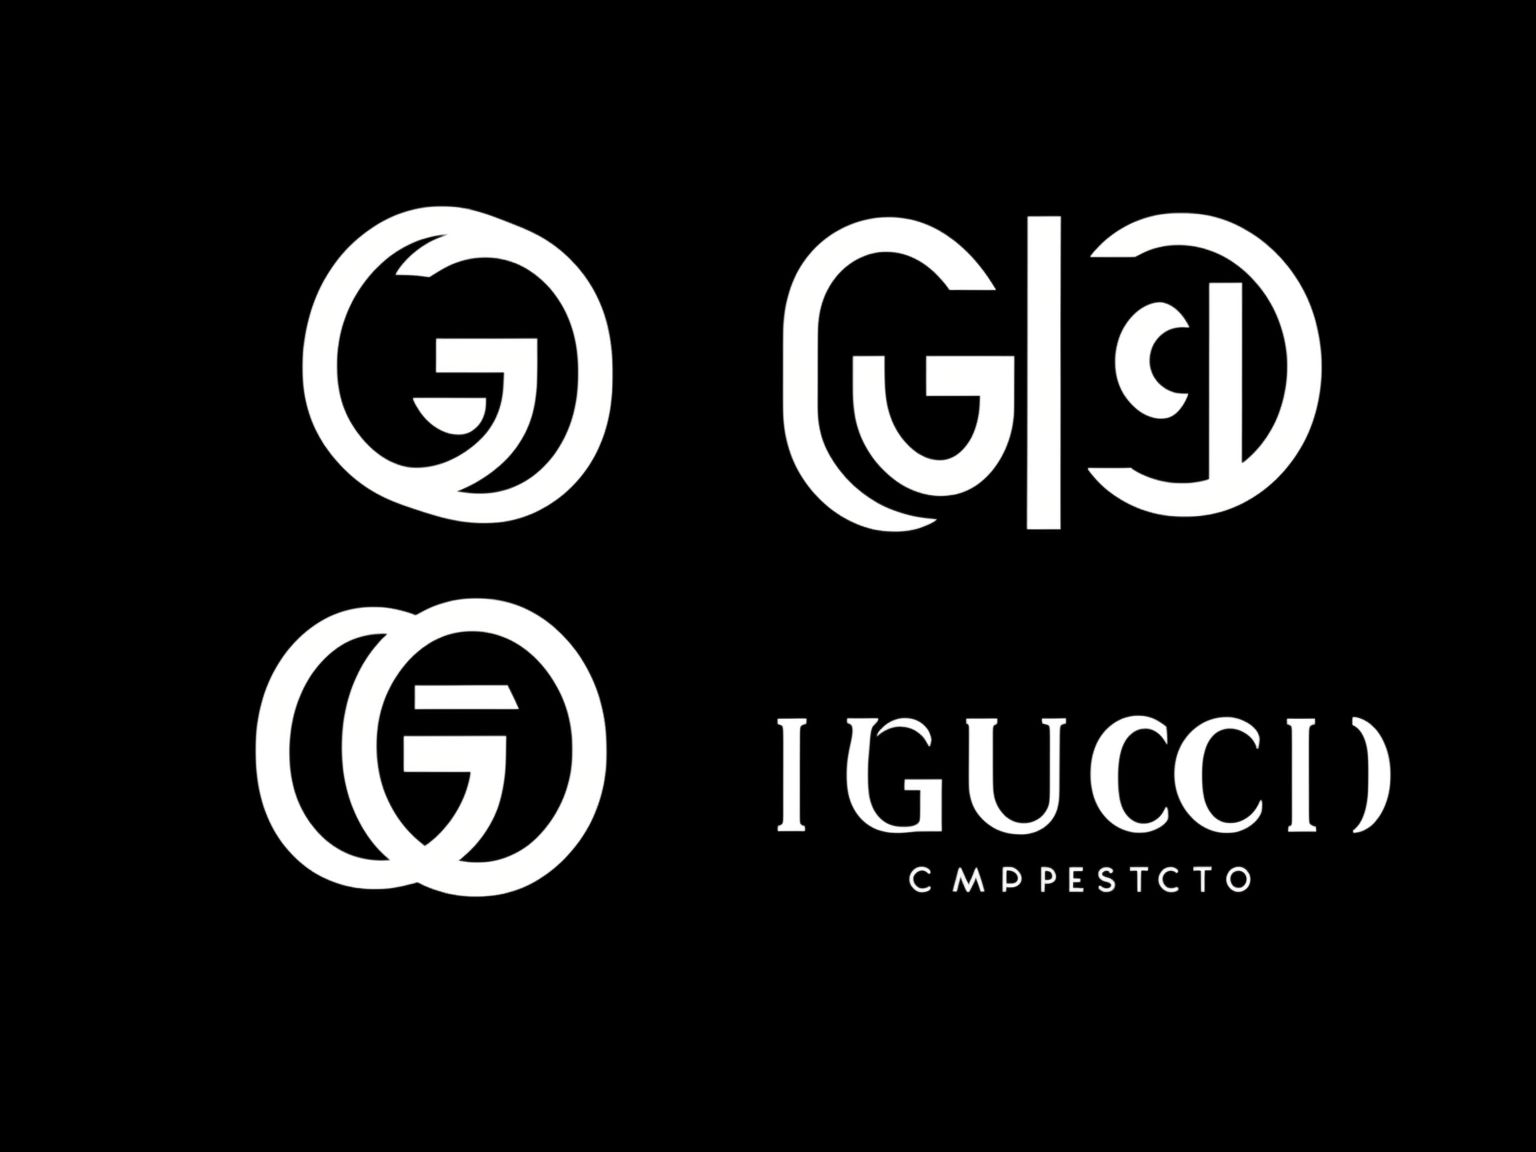 gucci logo design